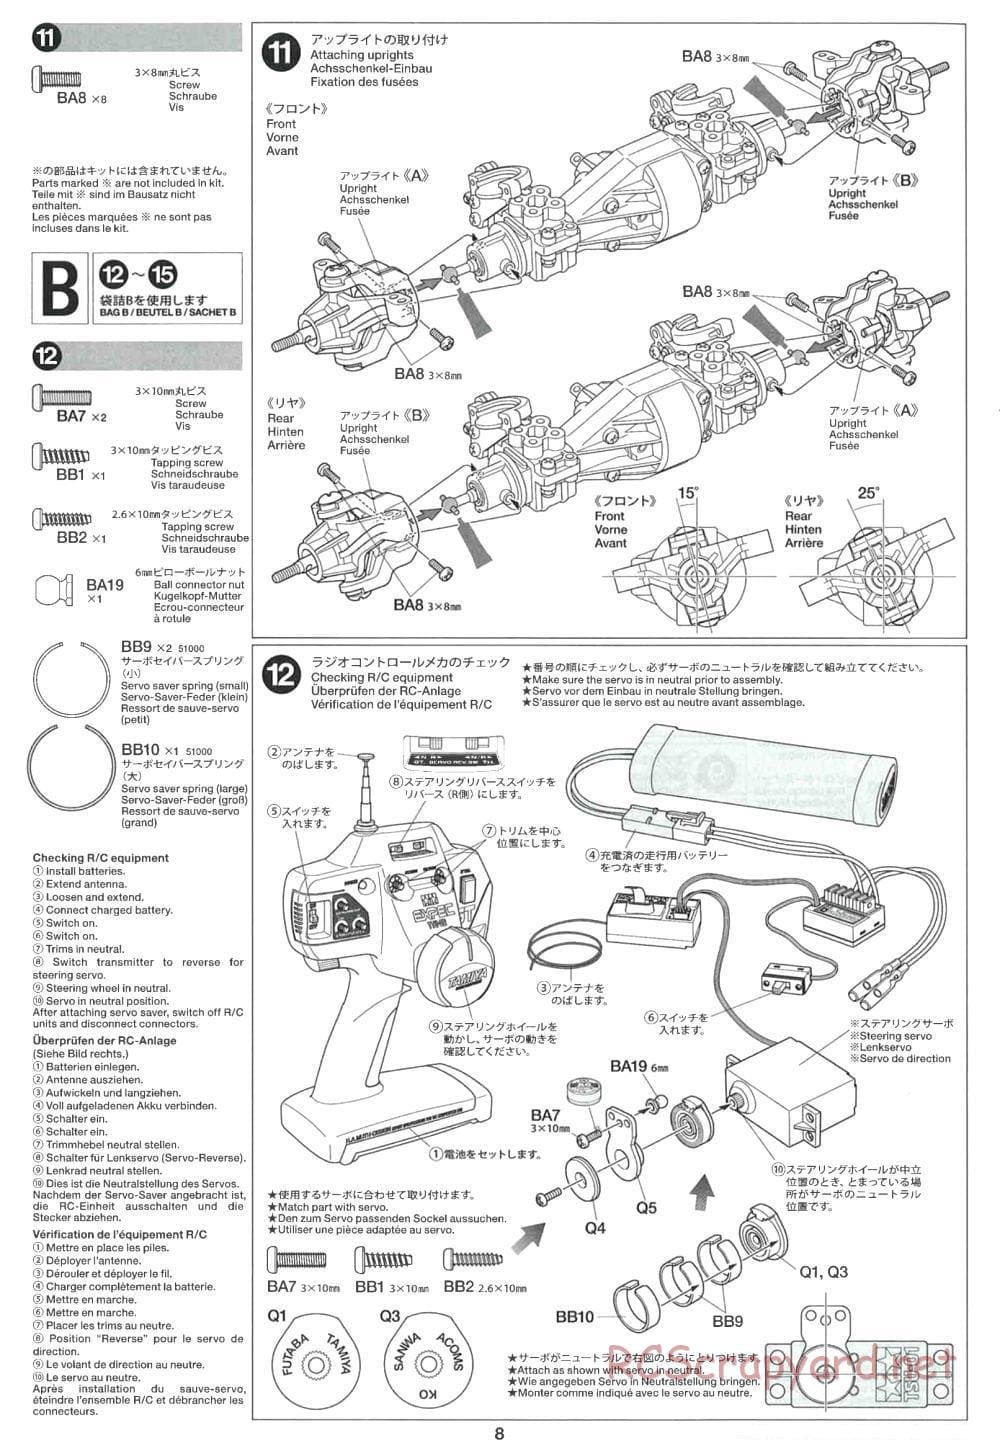 Tamiya - CR-01 Chassis - Manual - Page 8